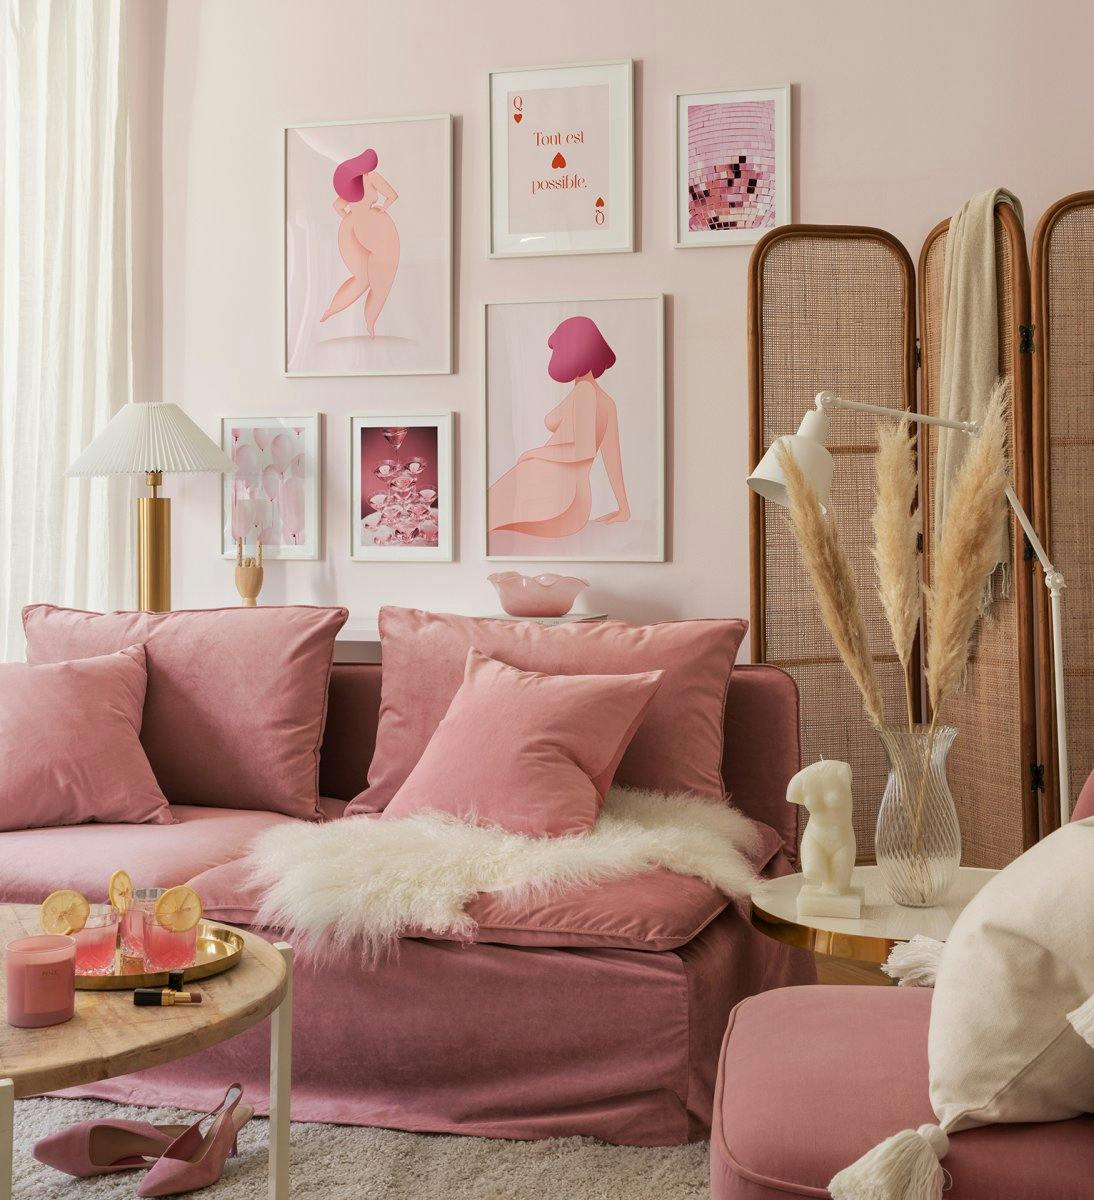 Parete della galleria ispirata al potere delle ragazze in rosa di forme femminili, illustrazioni e fotografie con cornici in leg